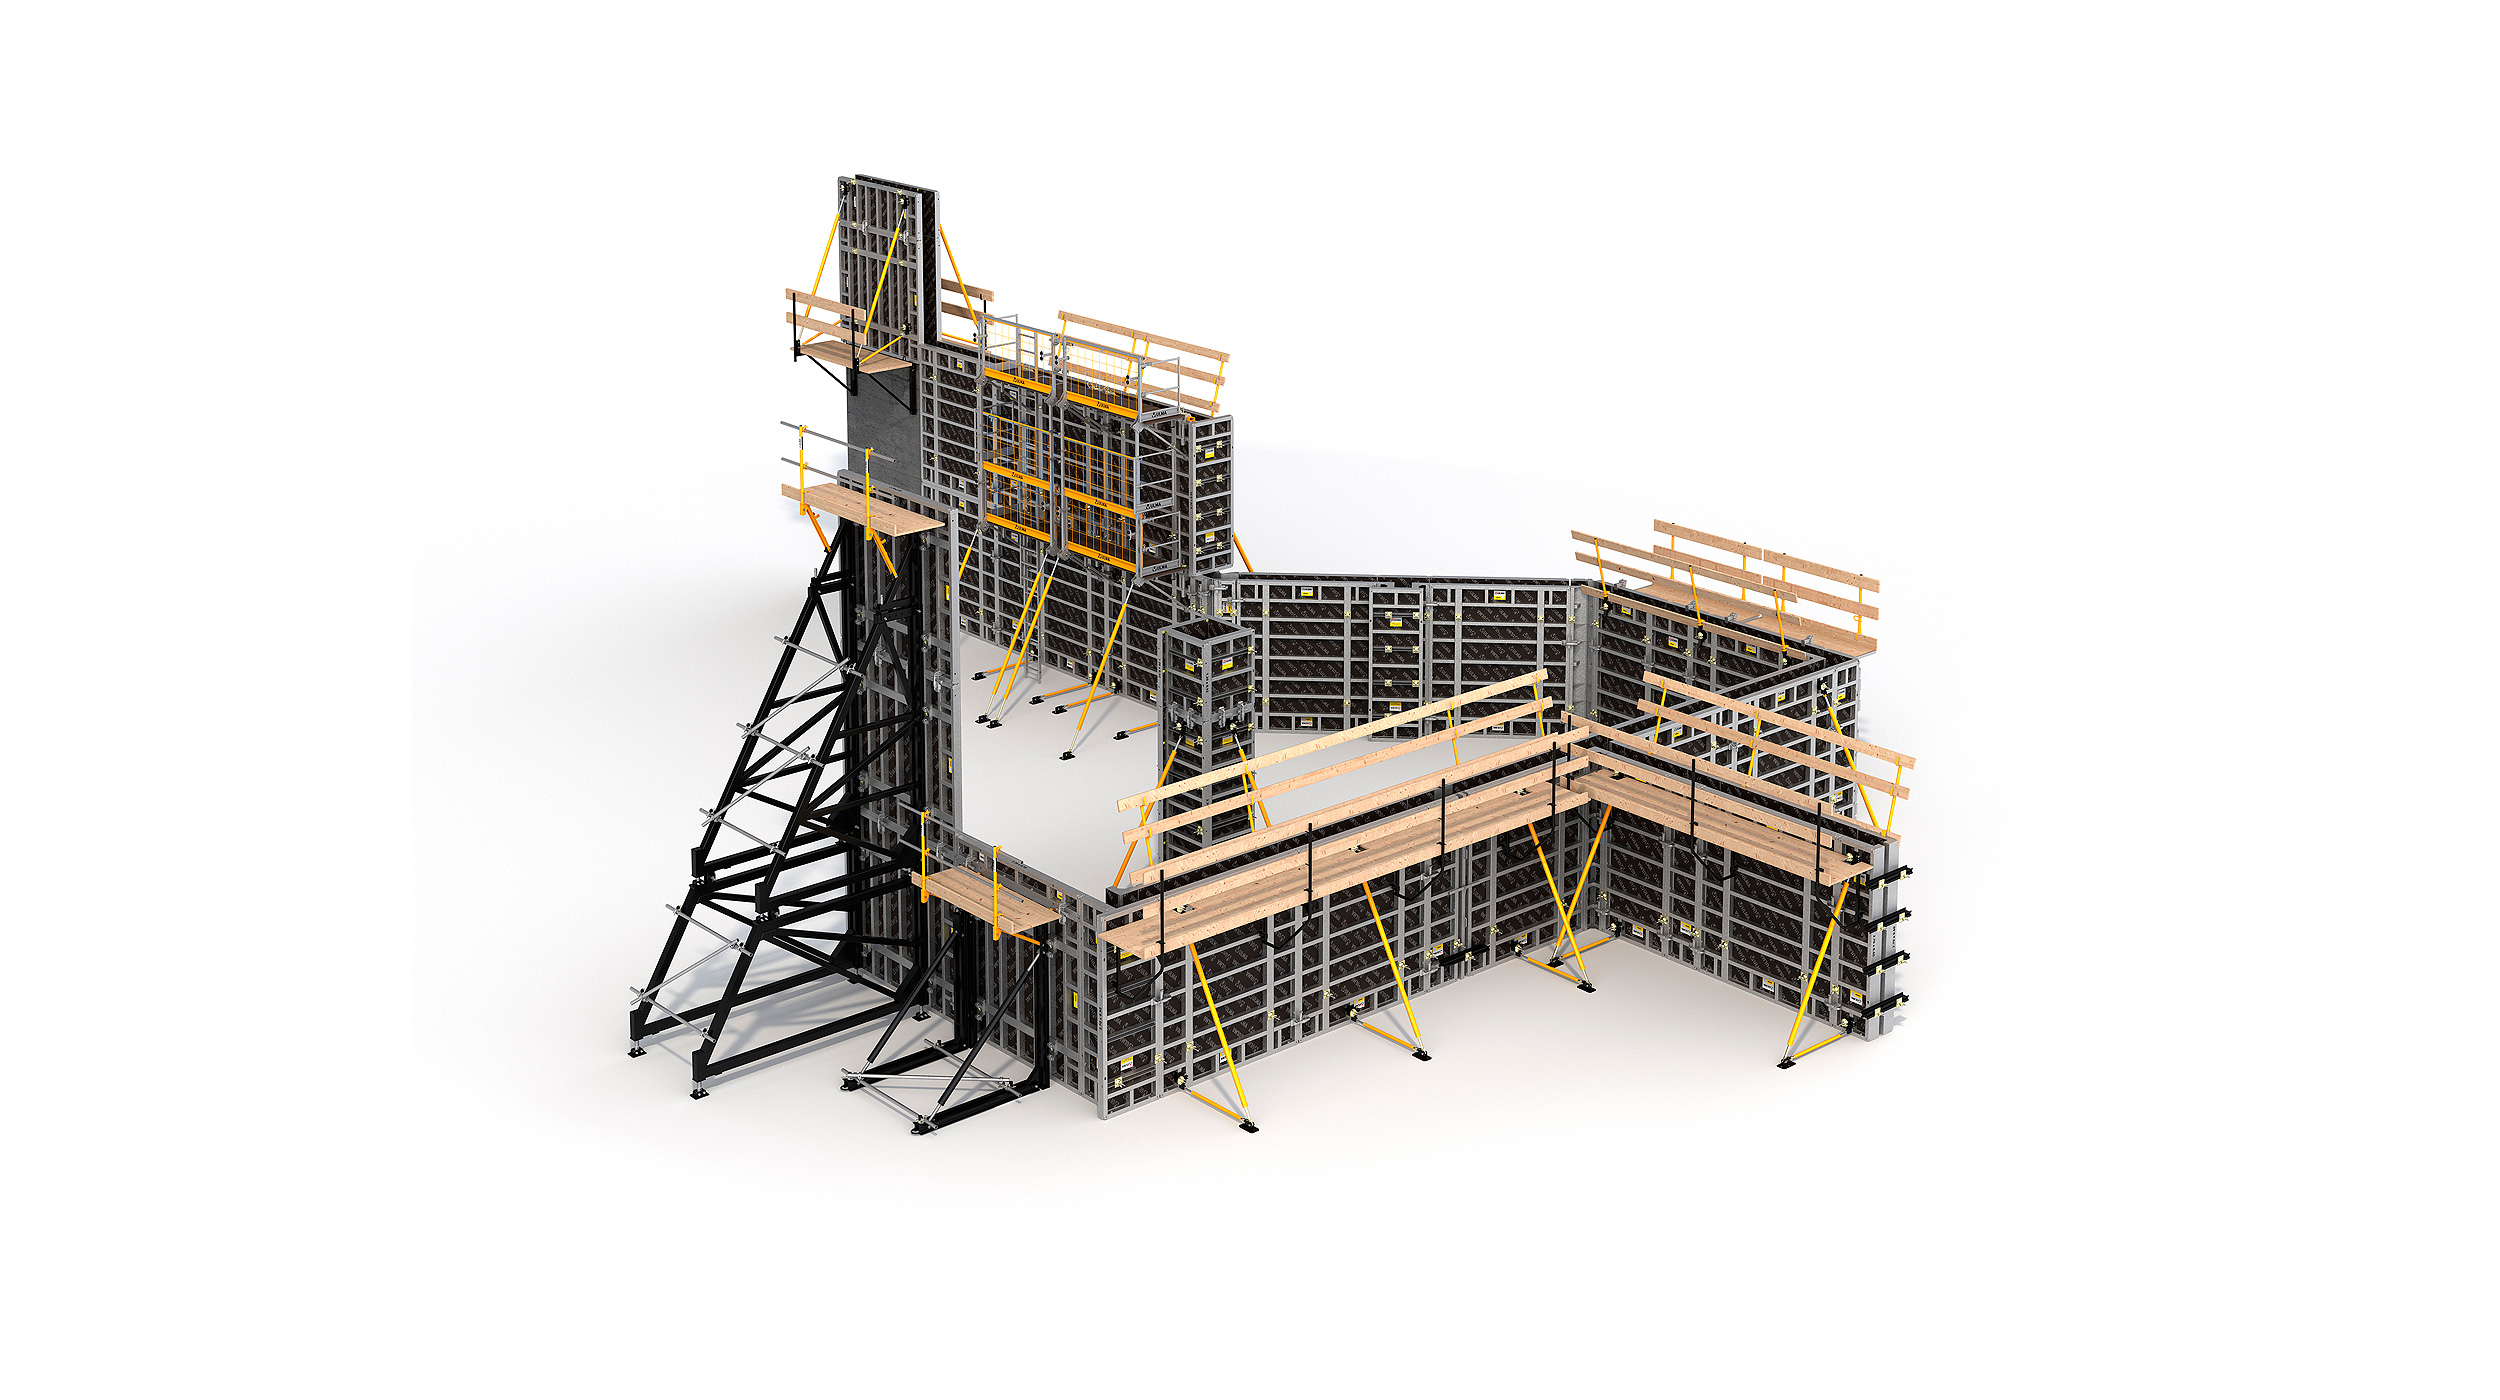 Modulares Schalungssystem für die Konstruktion beliebiger vertikaler Betonstrukturen. Highlights: hohe Leistungsfähigkeit bei minimalen Lohnkosten.